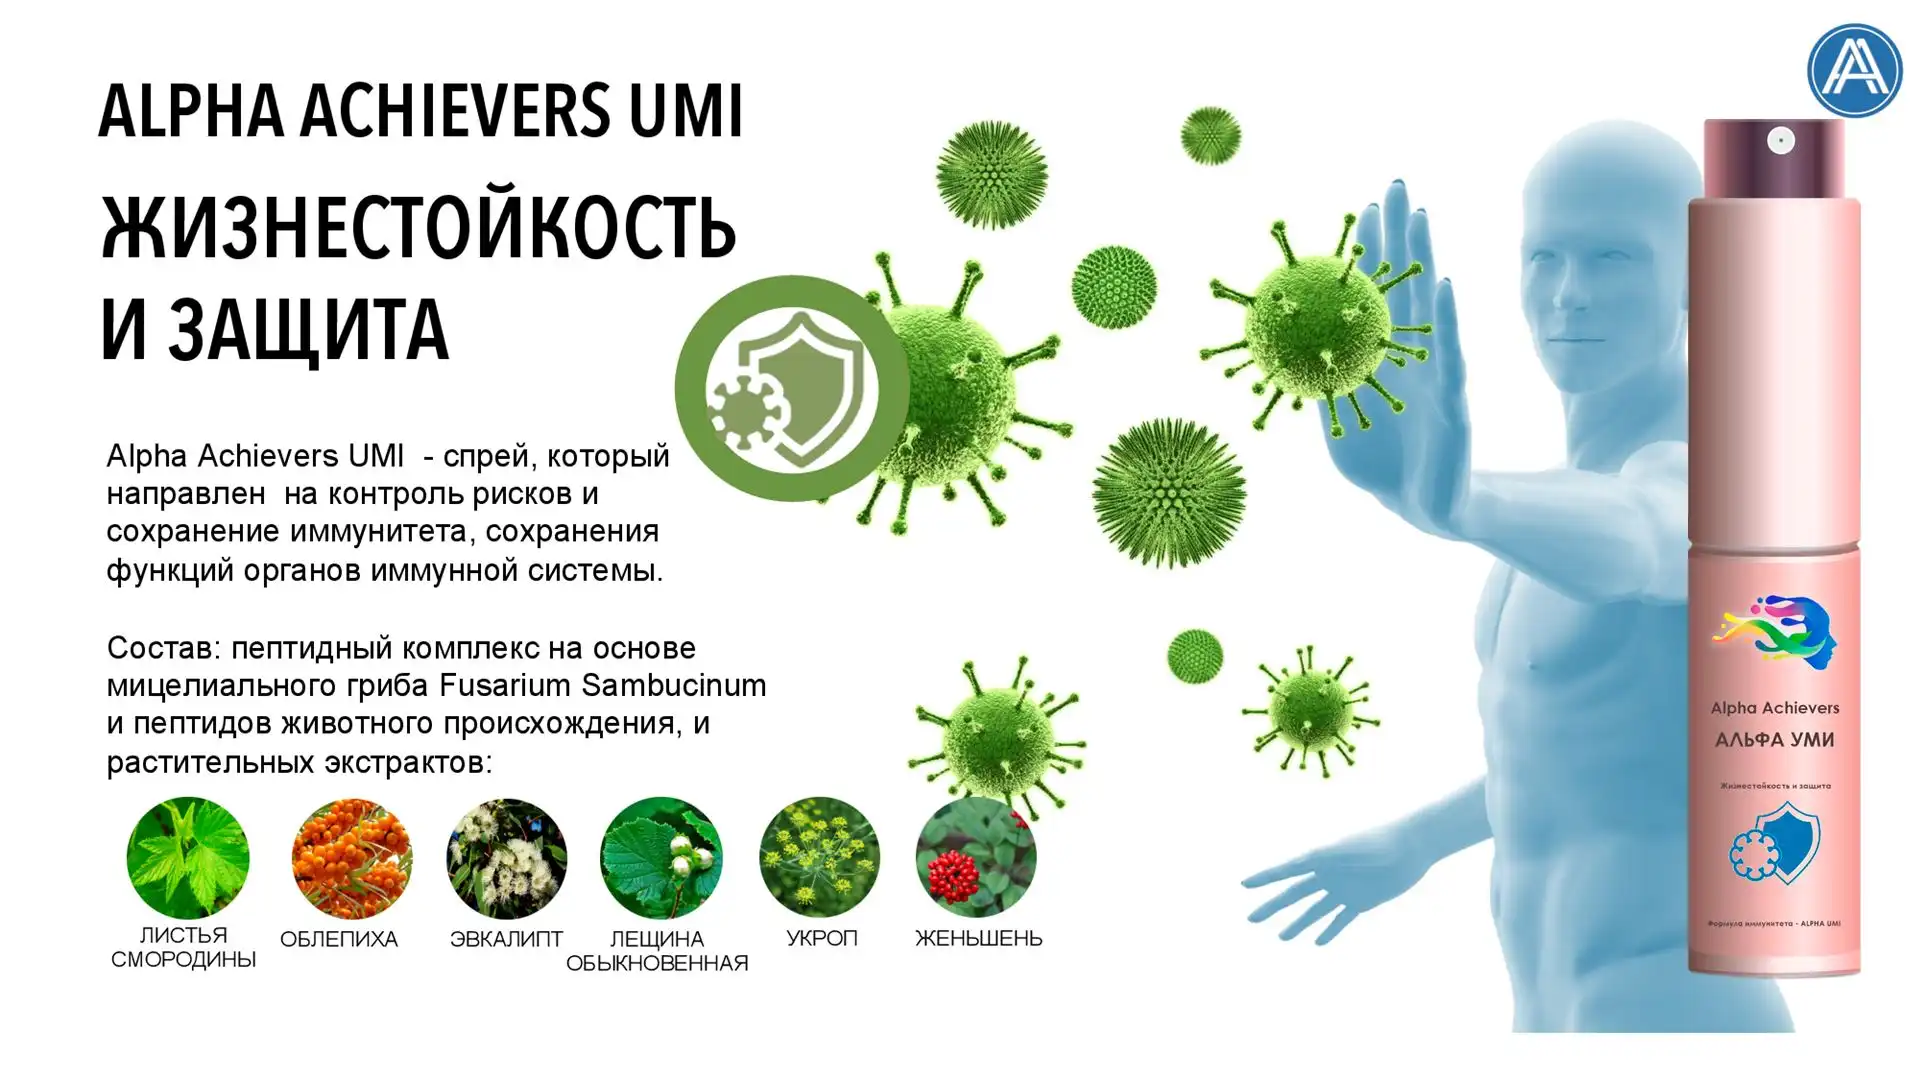 Alpha Achievers UMI- направлен на поддержание и восстановление иммунной системы